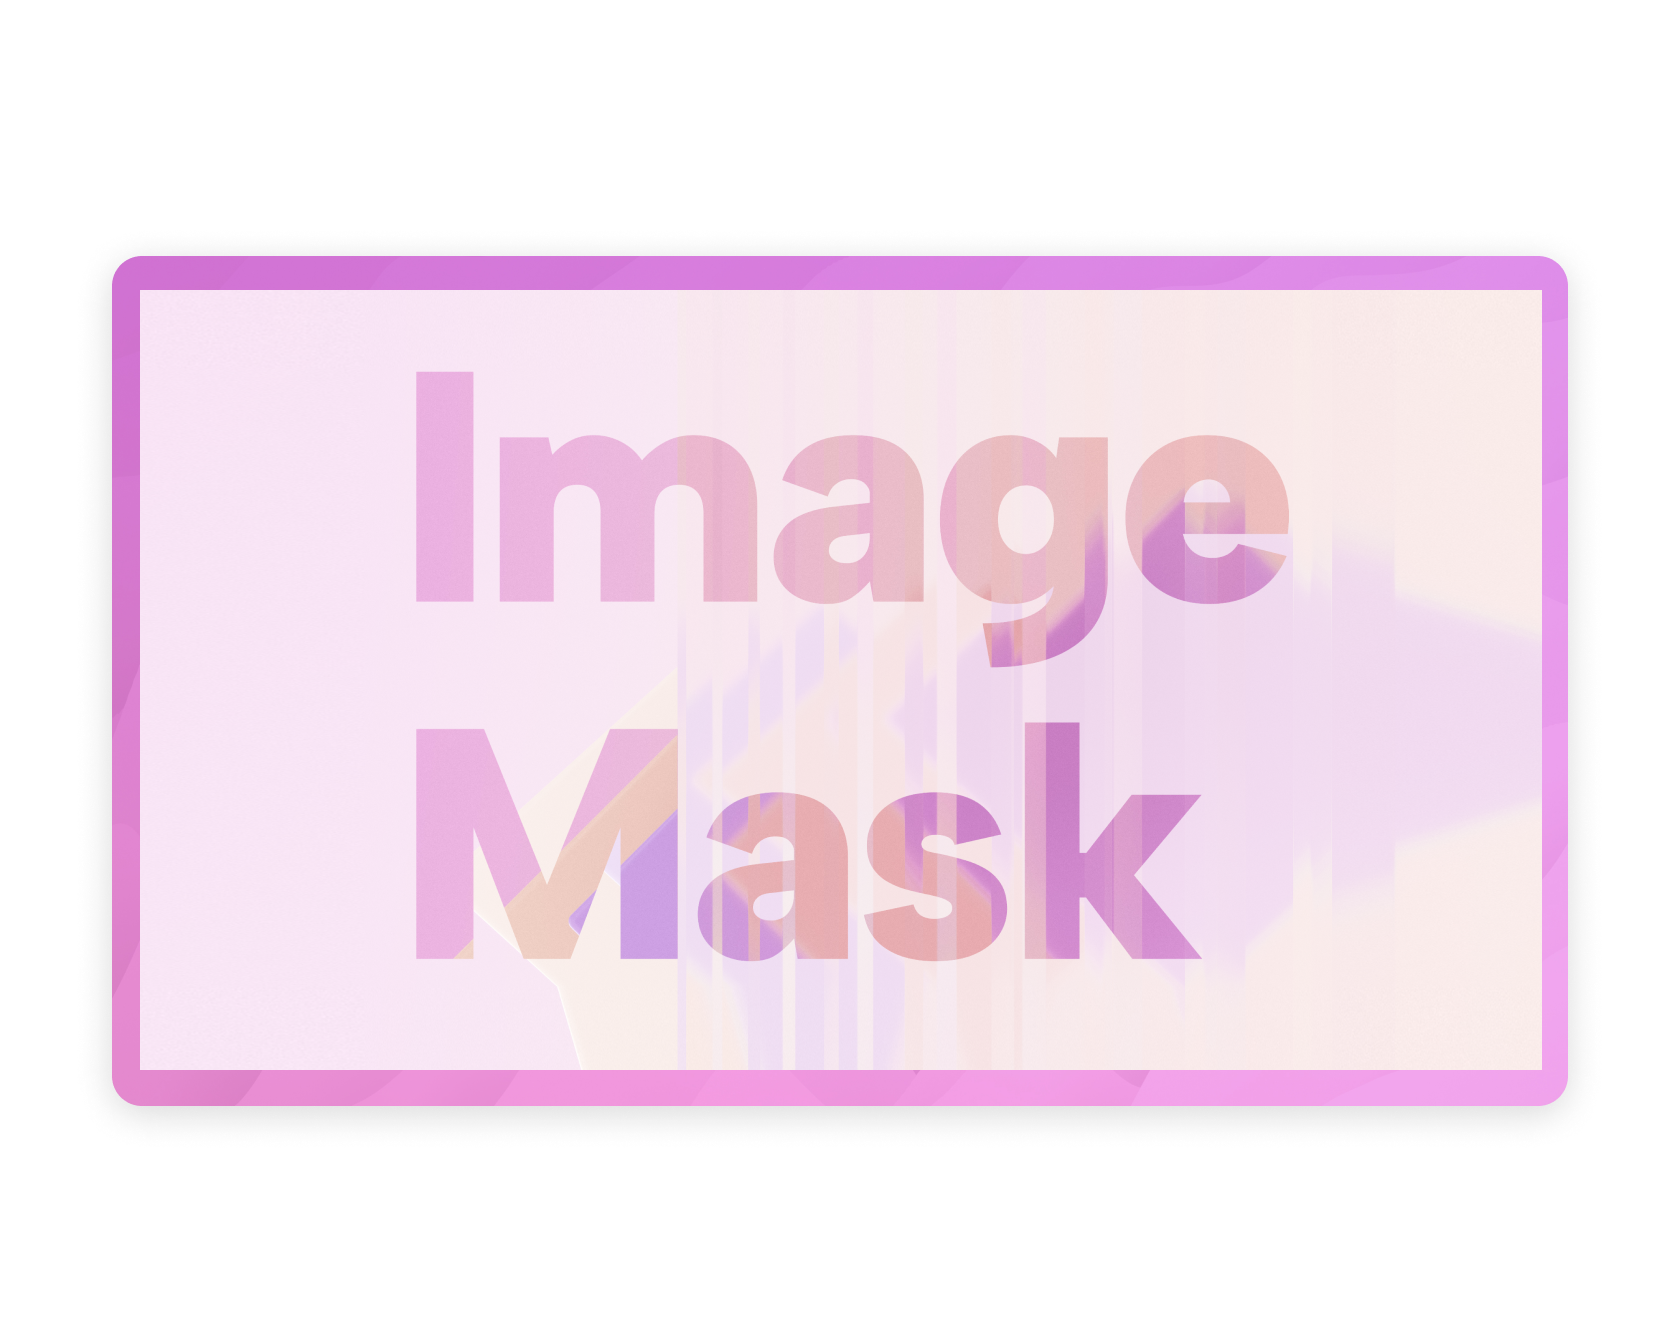 Image Mask